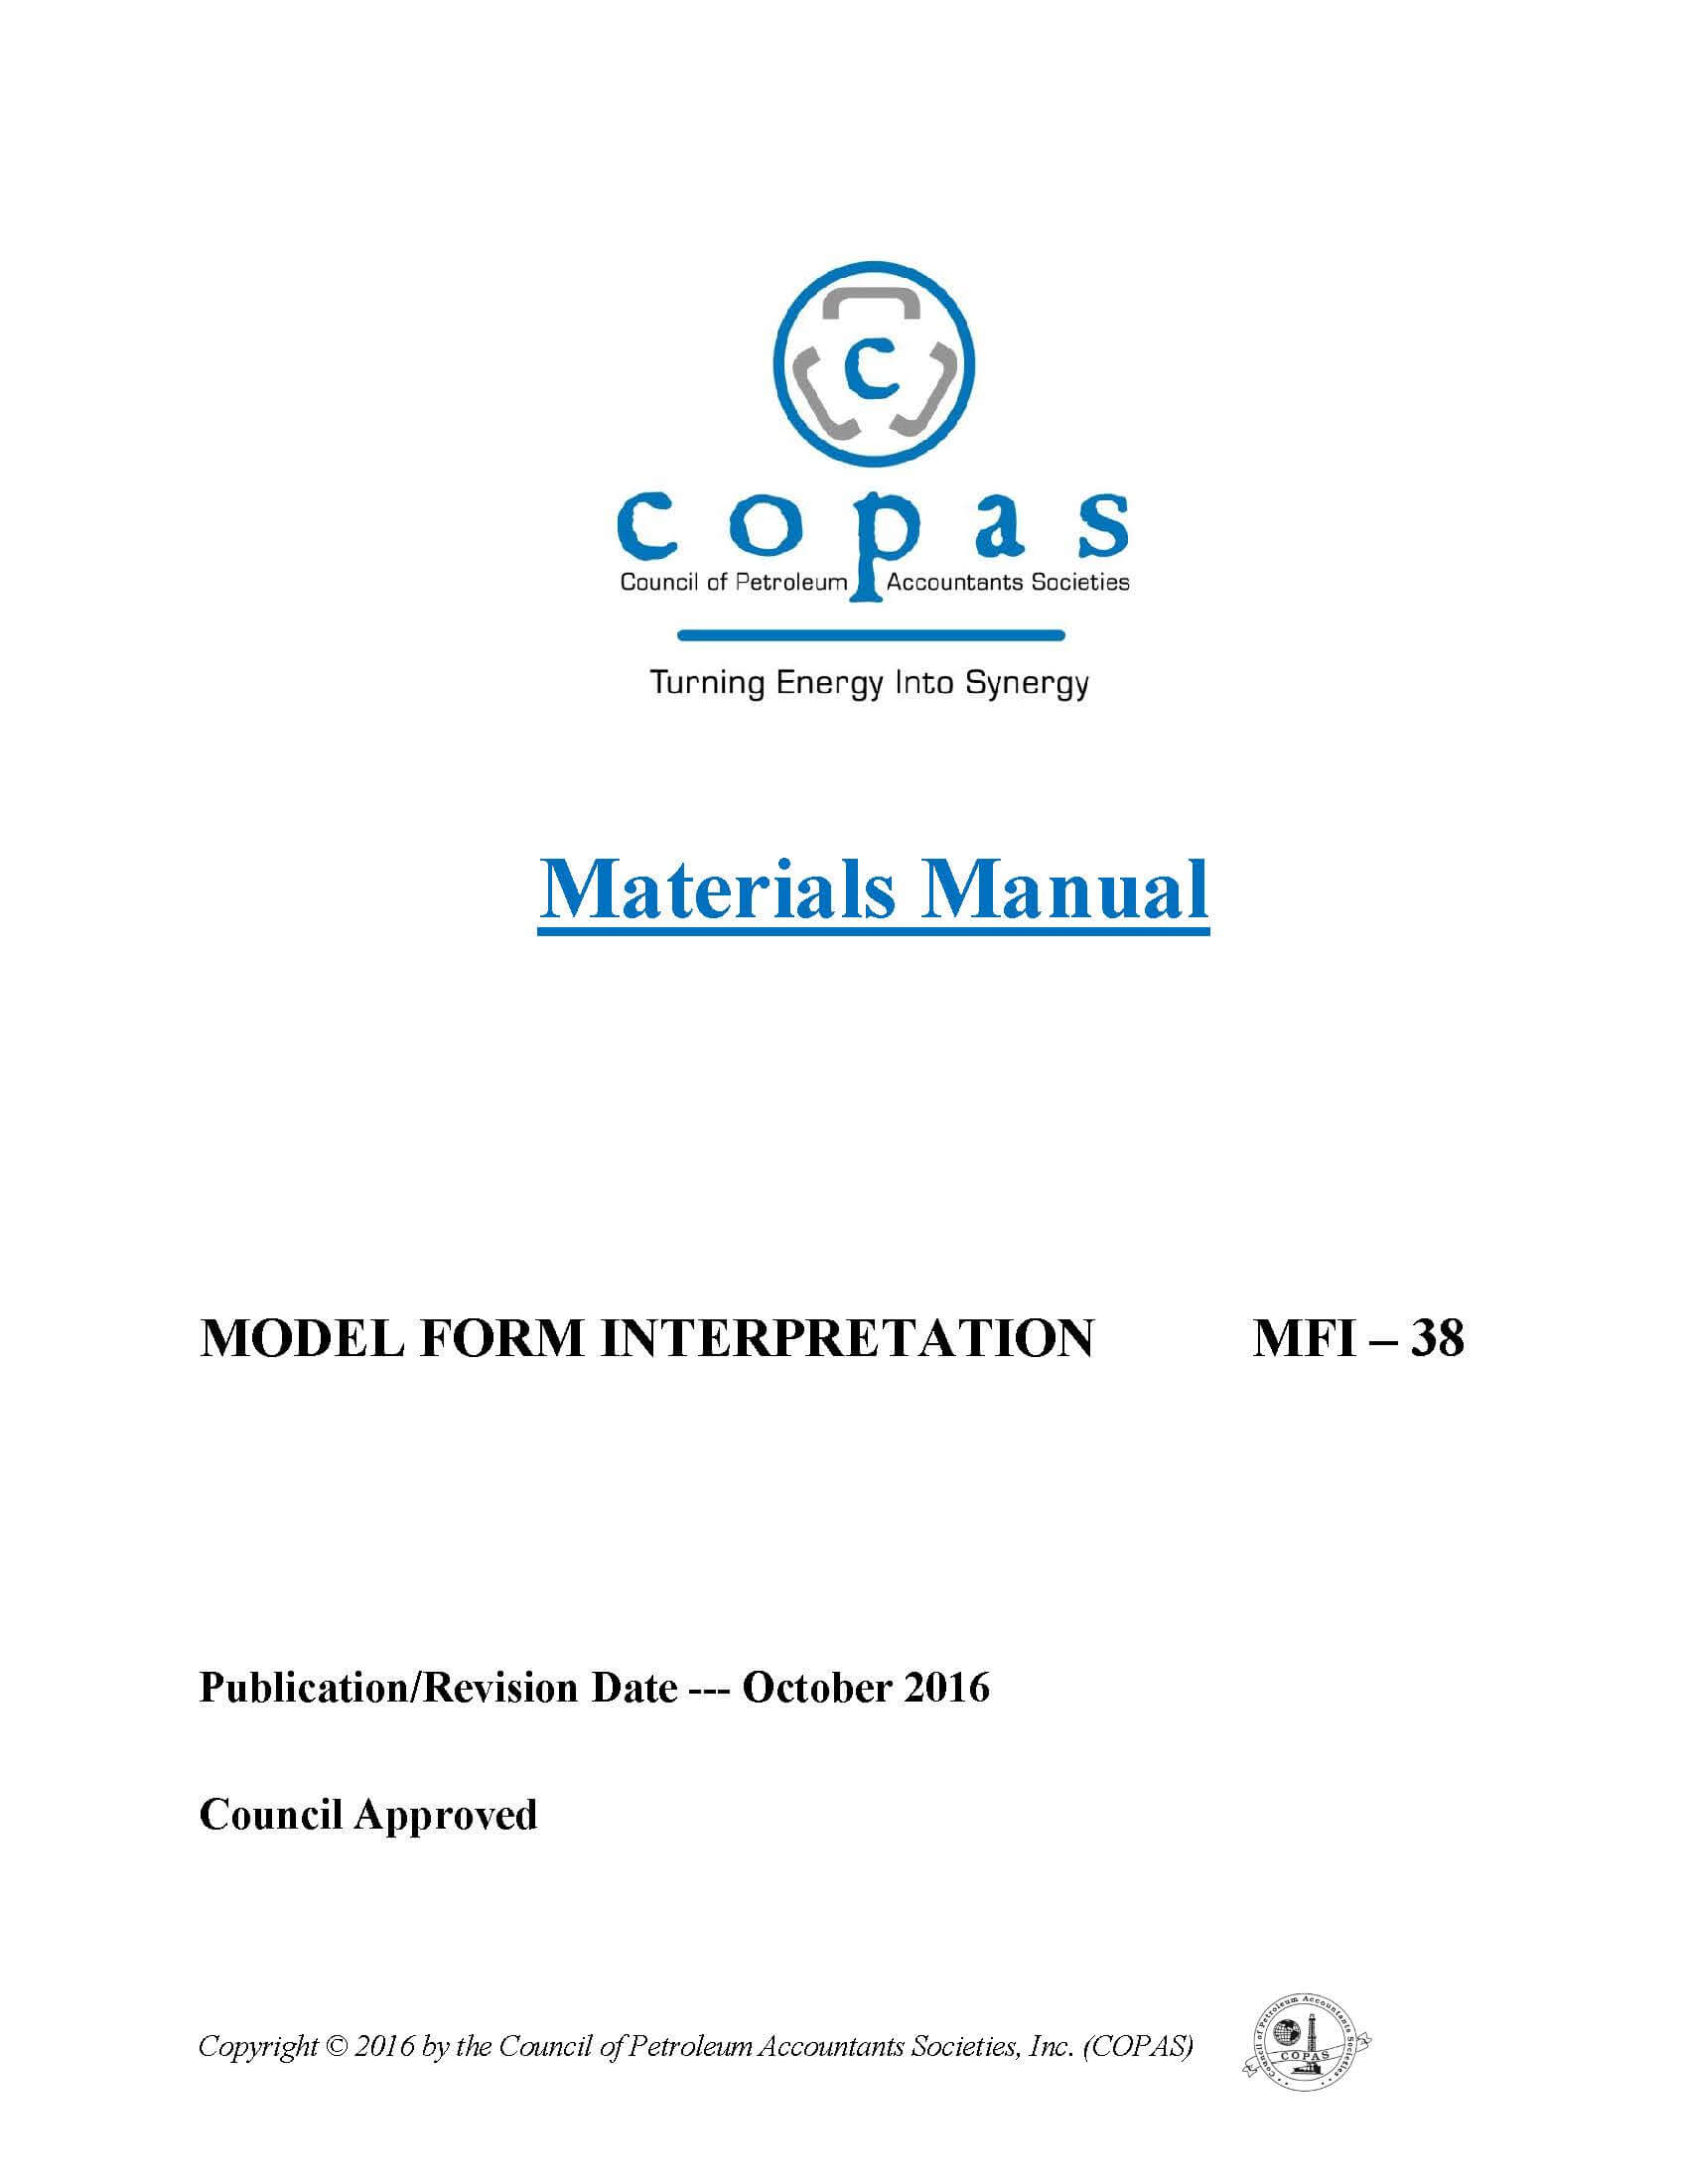 MFI-38 Materials Manual - products MFI 38 Materials Manual - Council of Petroleum Accountants Societies